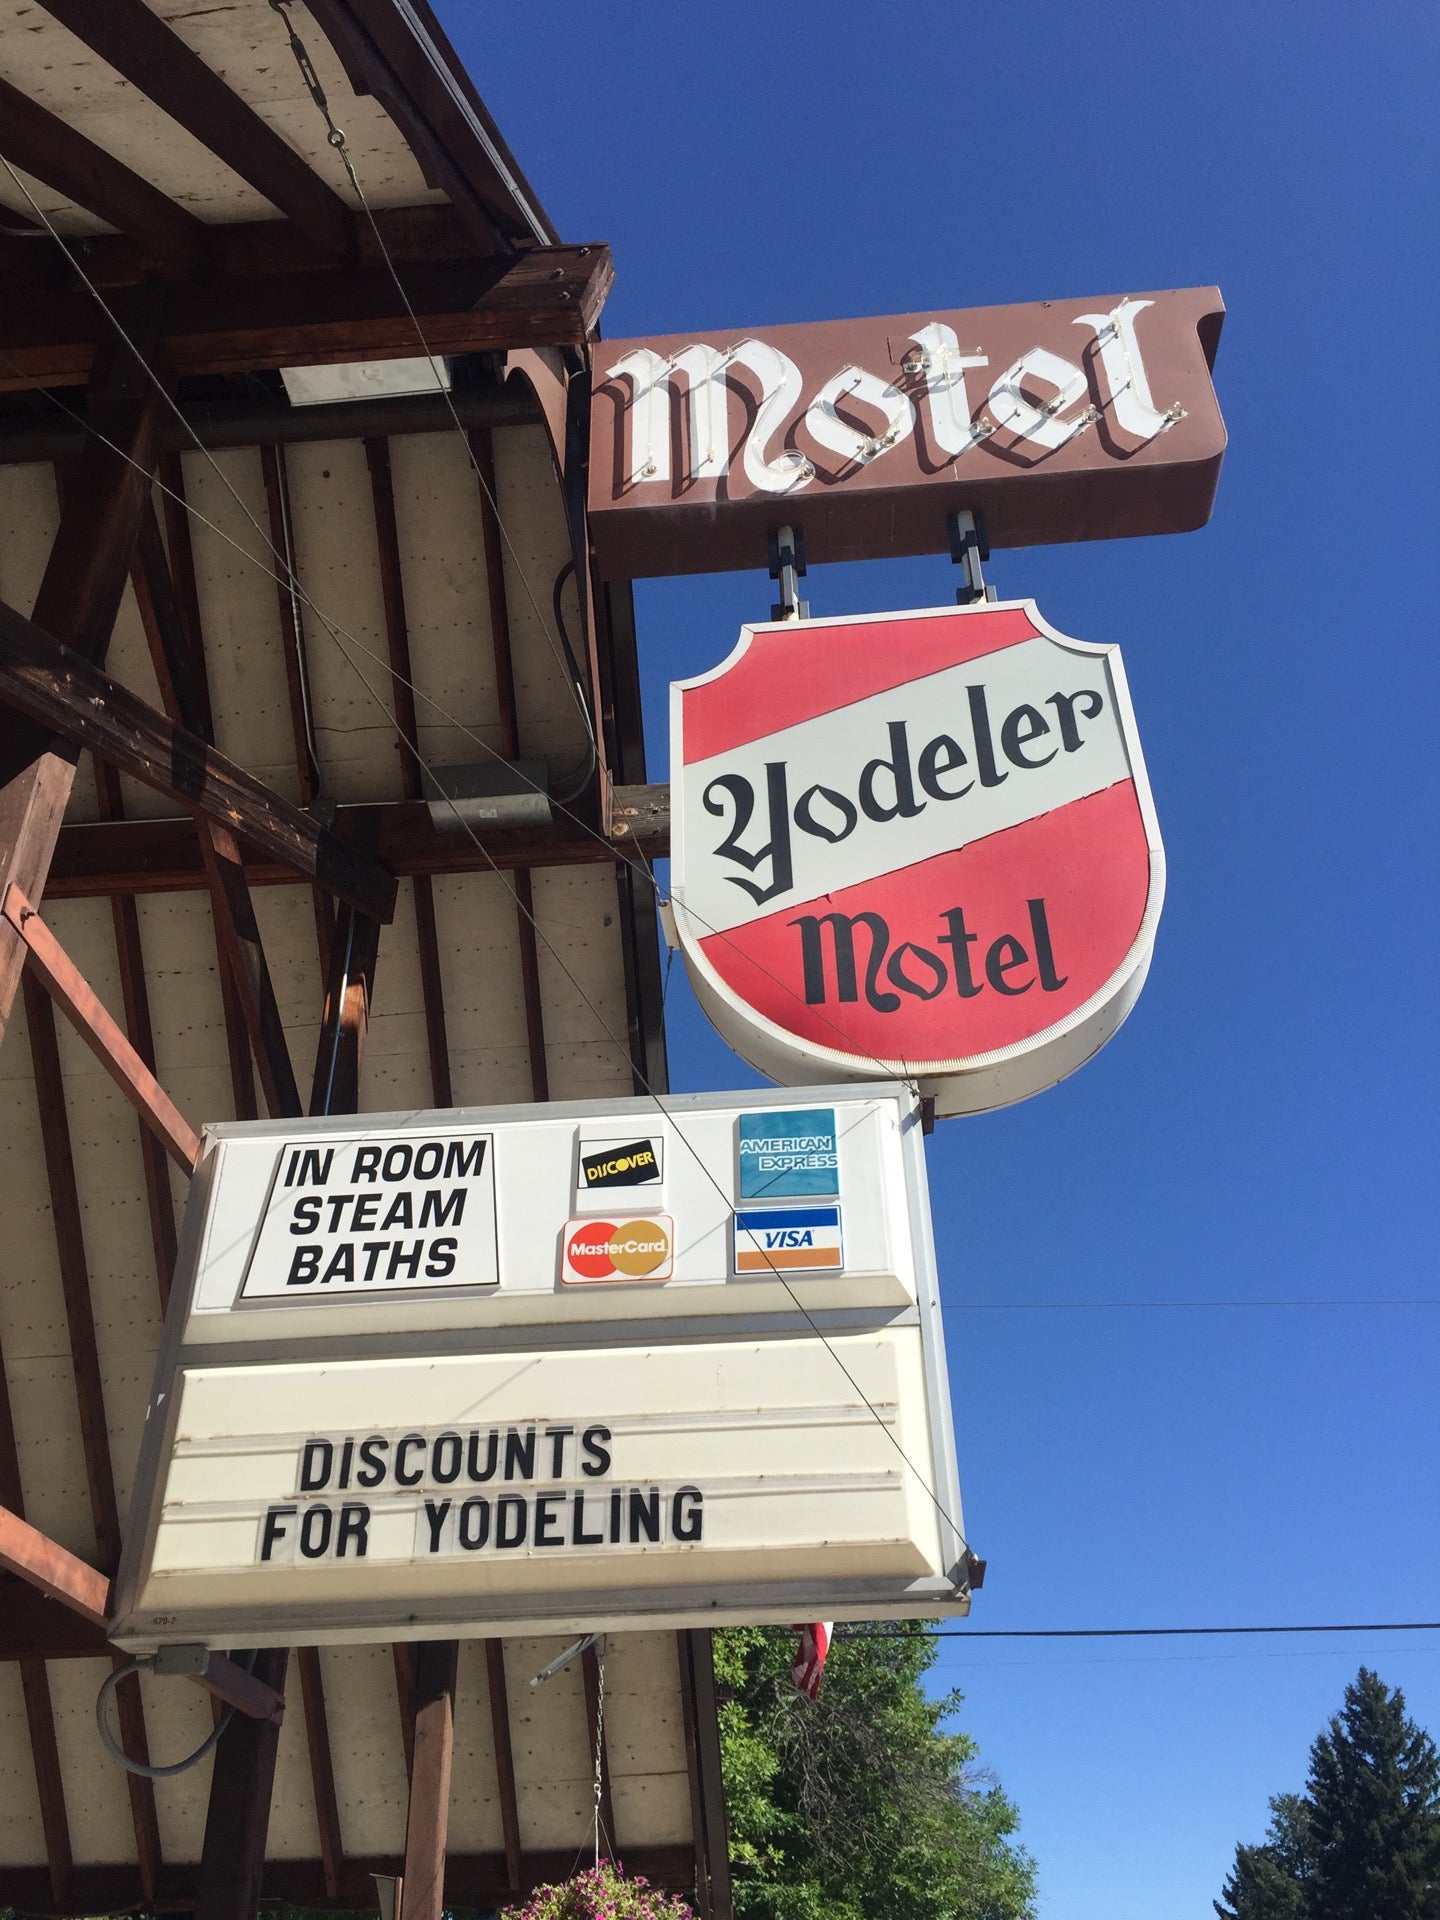 Yodeler Motel - Red Lodge, MT - Yodeler Motel